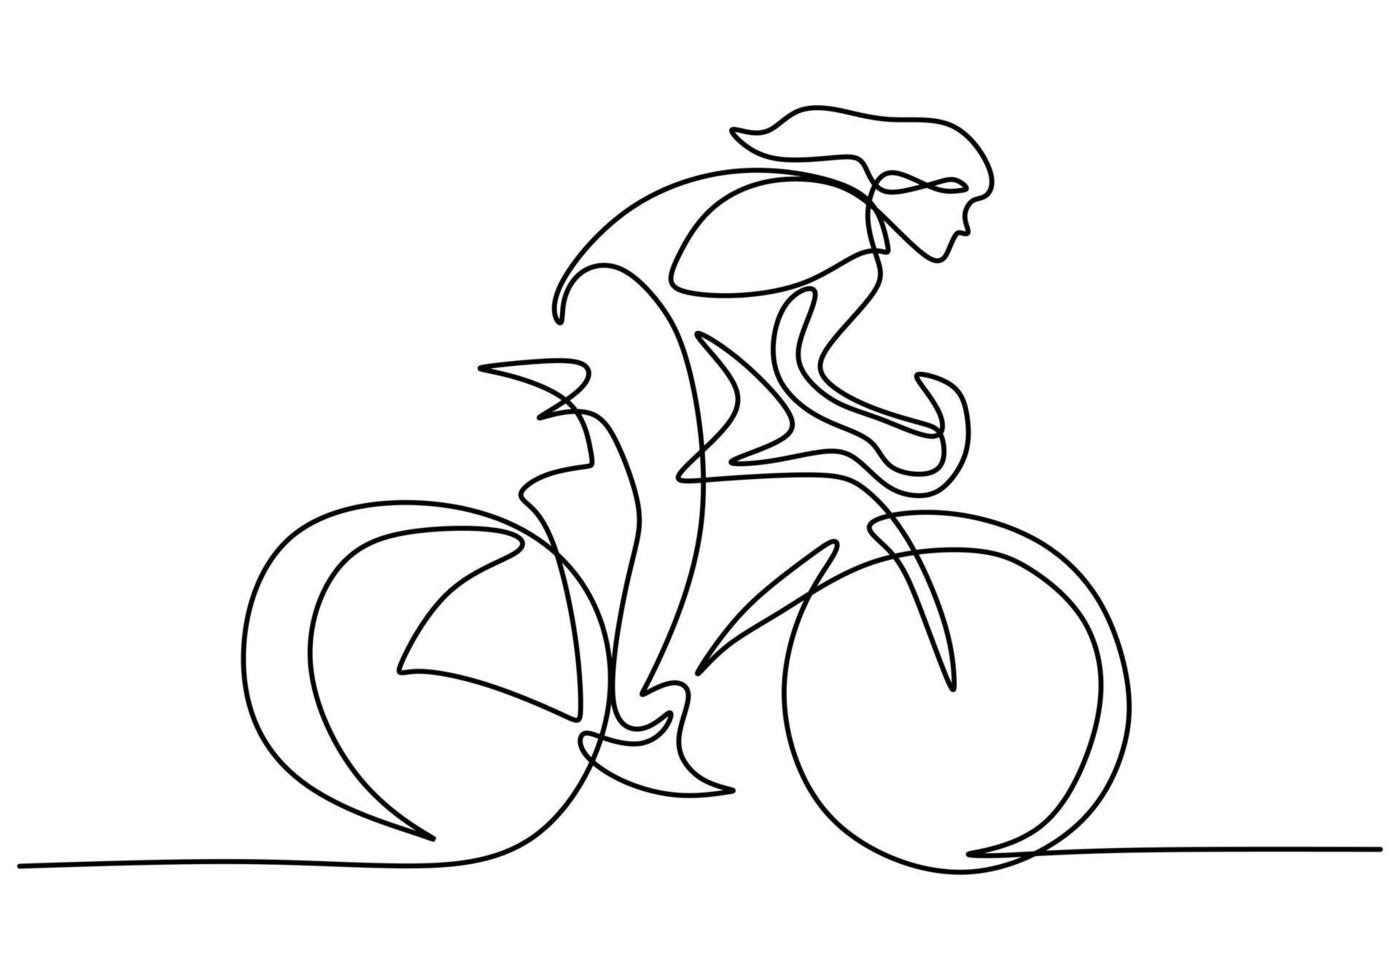 desenho de linha única contínua do foco do piloto de bicicleta jovem treina suas habilidades na rua vetor